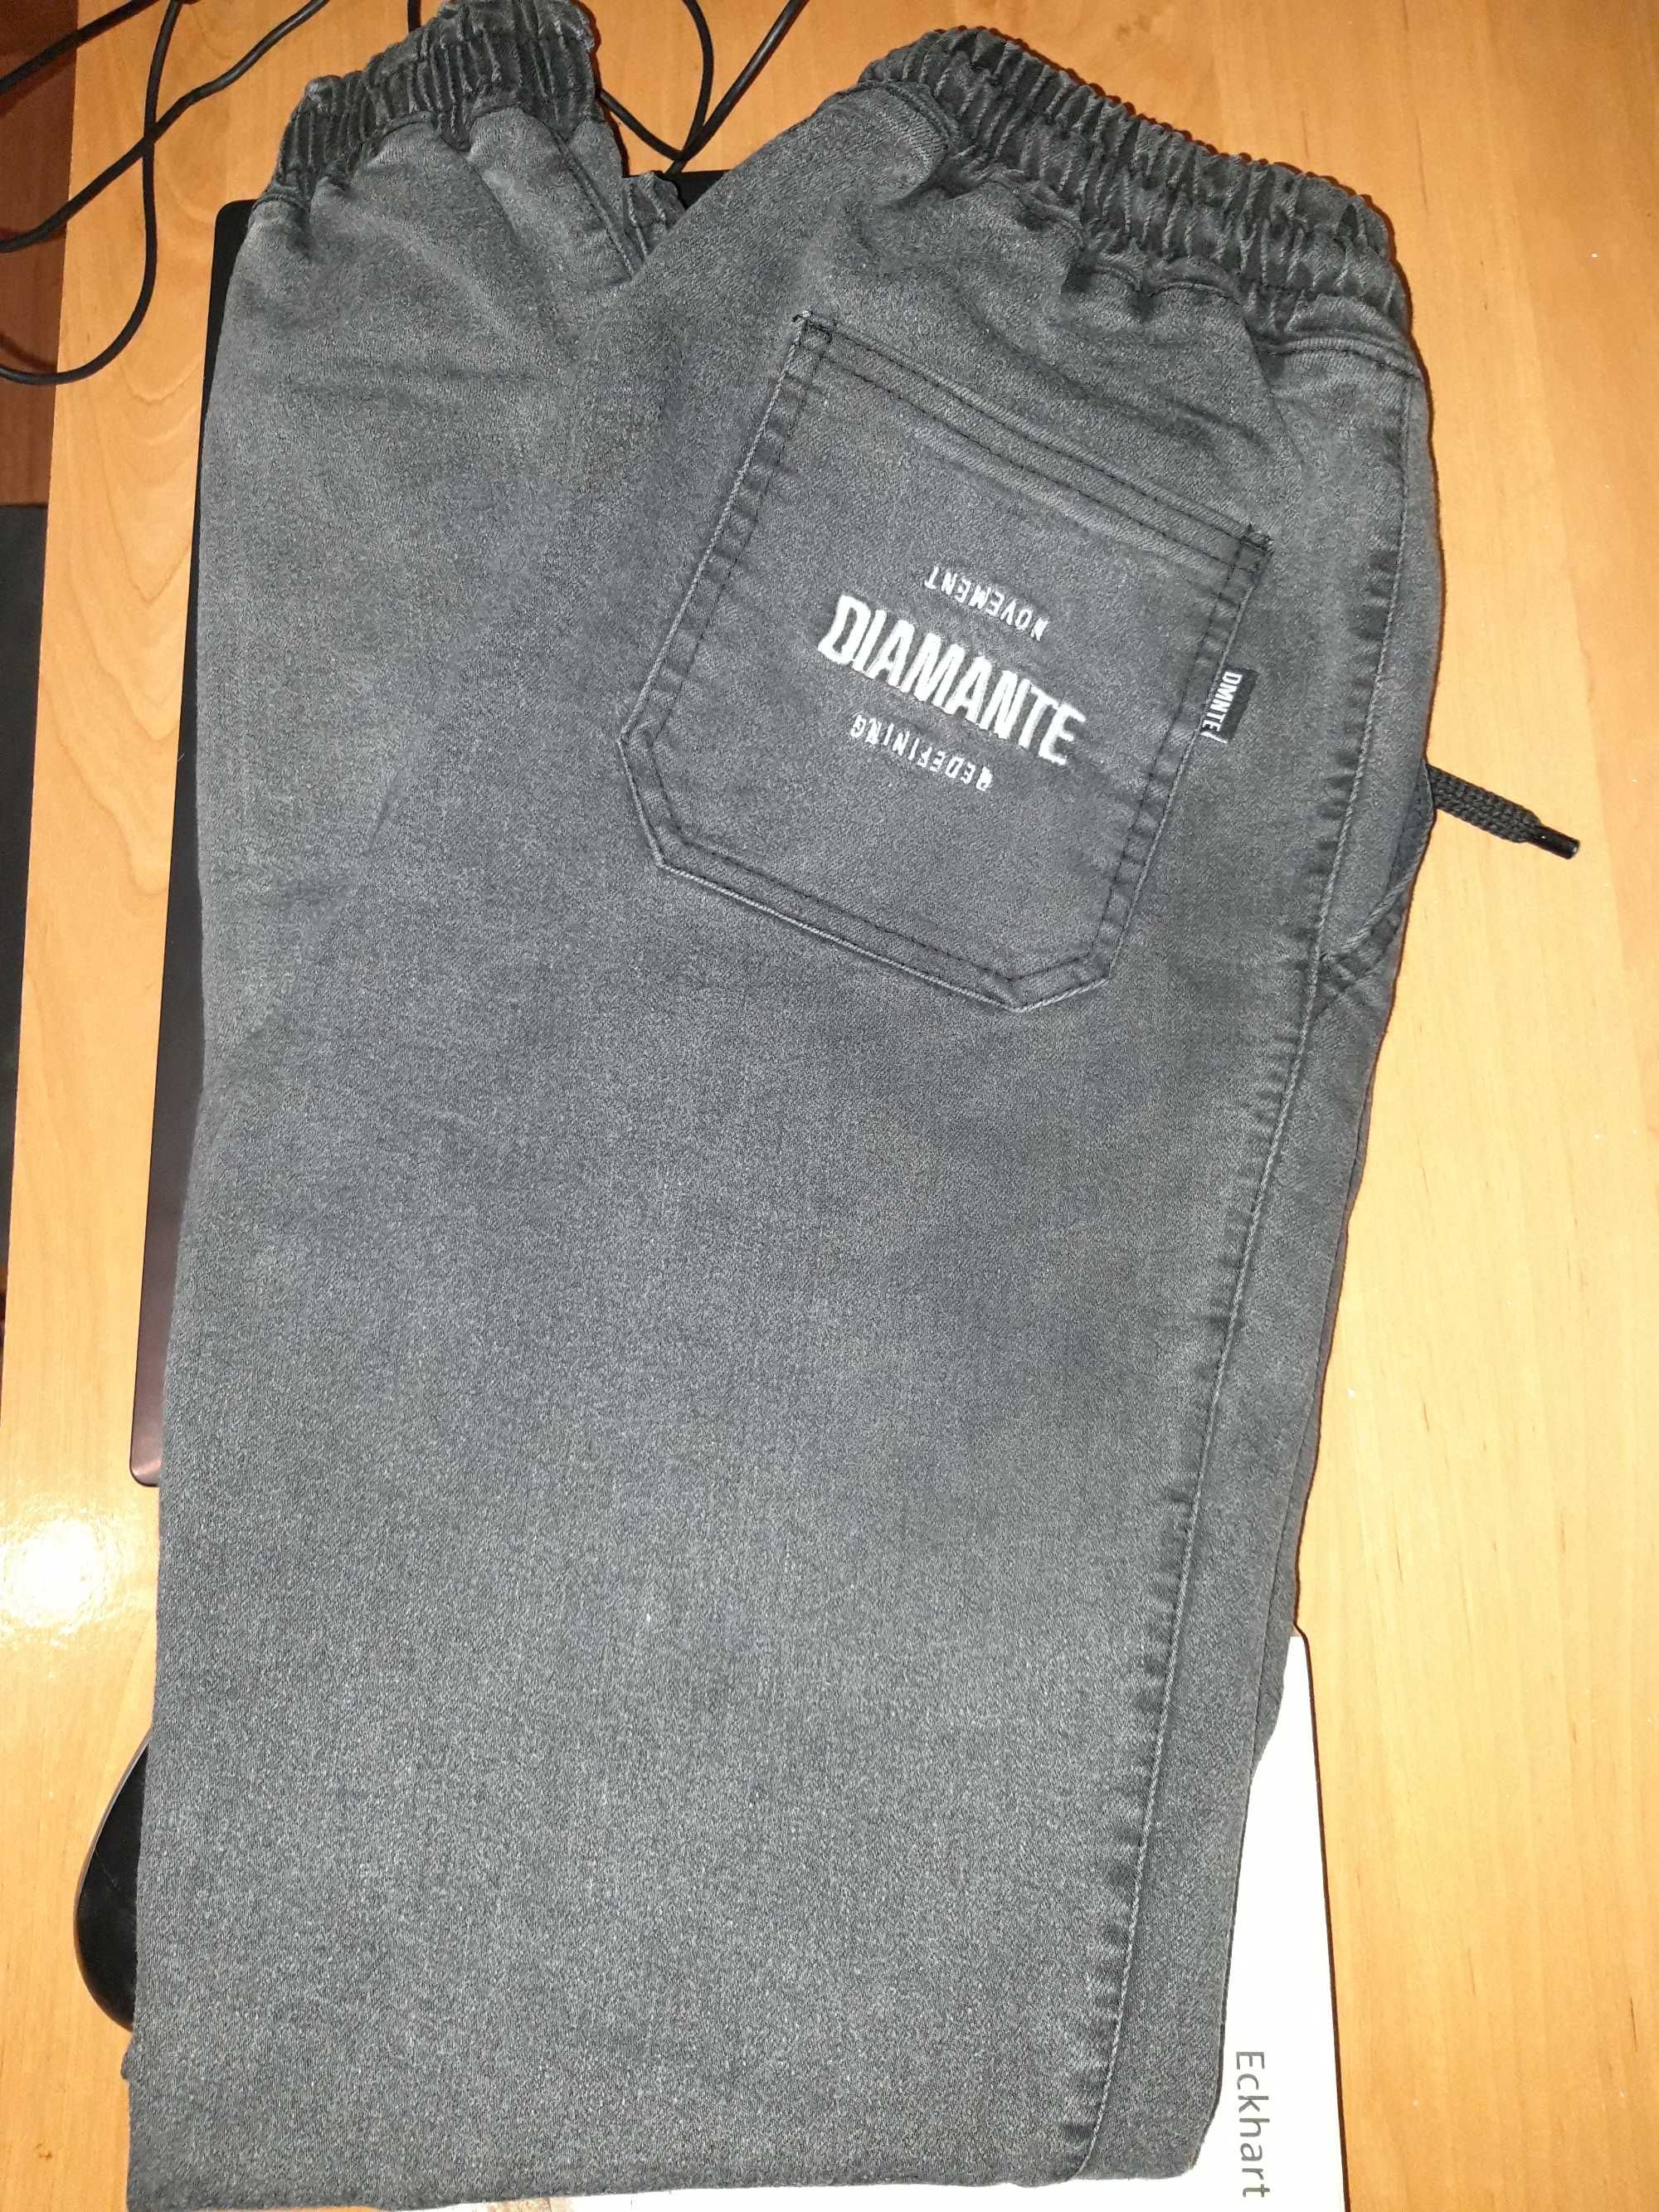 Spodnie czarne joggery Diamante Wear damskie/męskie (unisex)